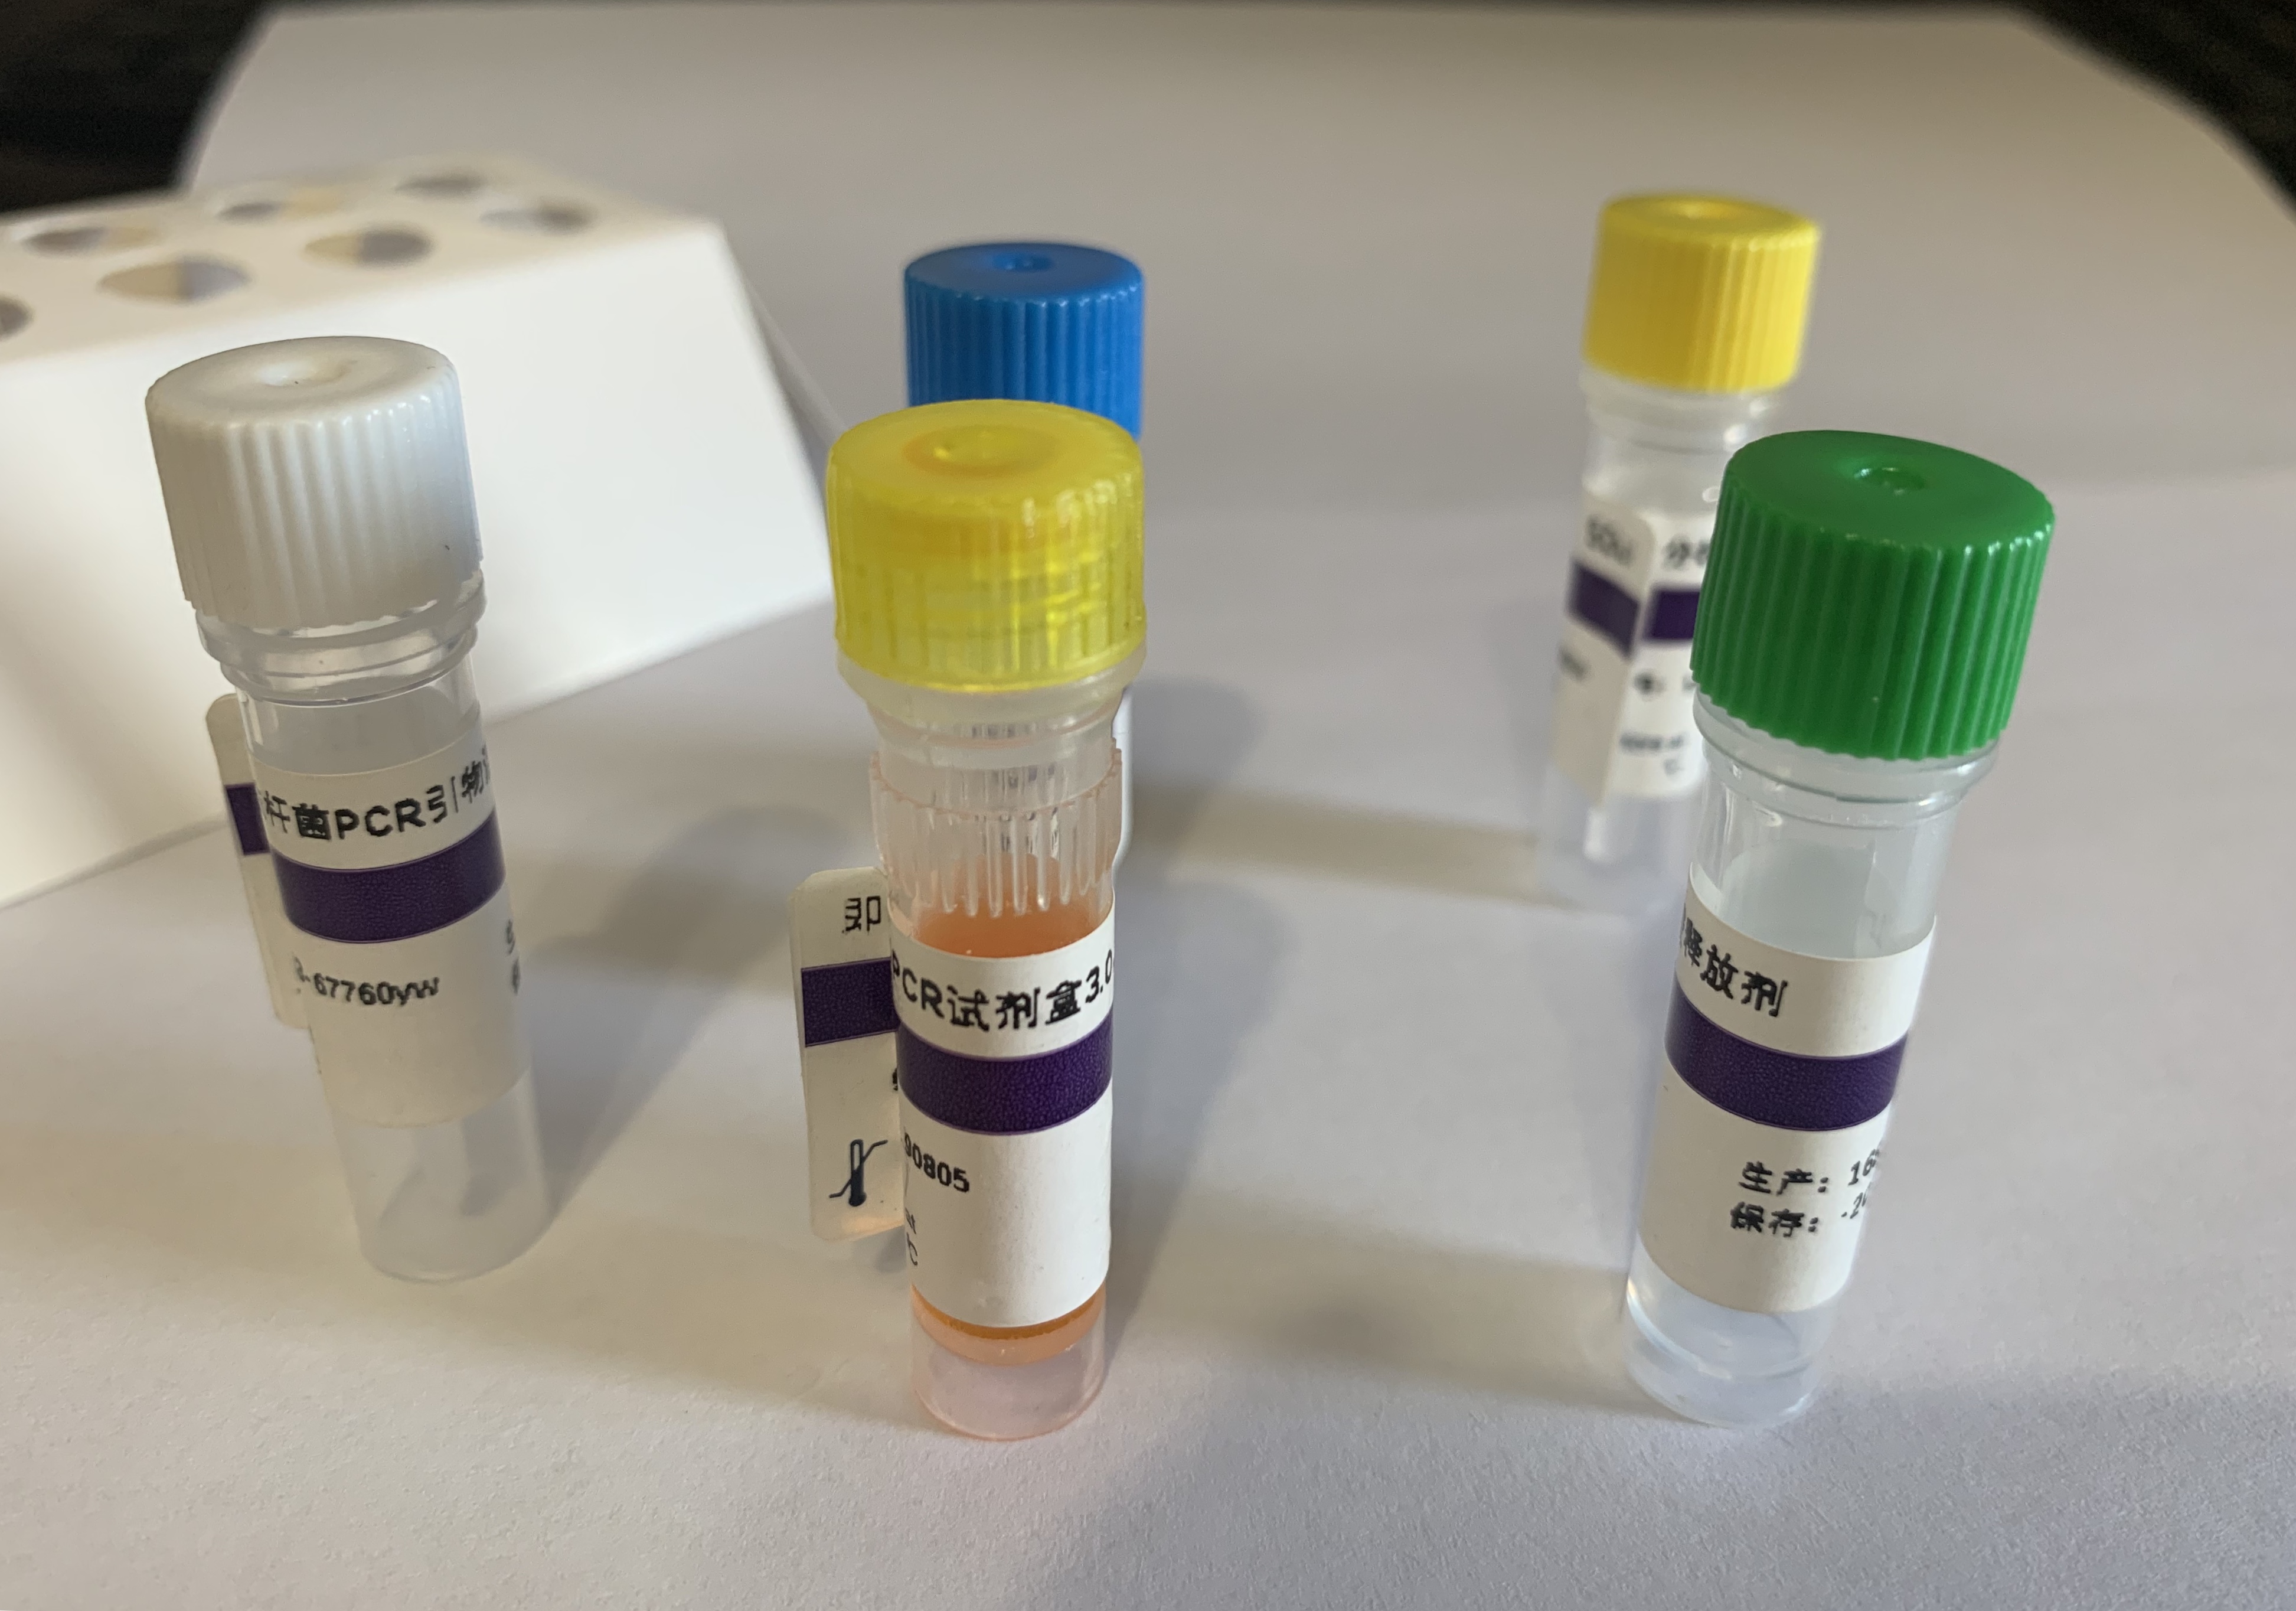 安第斯马铃薯斑驳病毒RT-PCR试剂盒